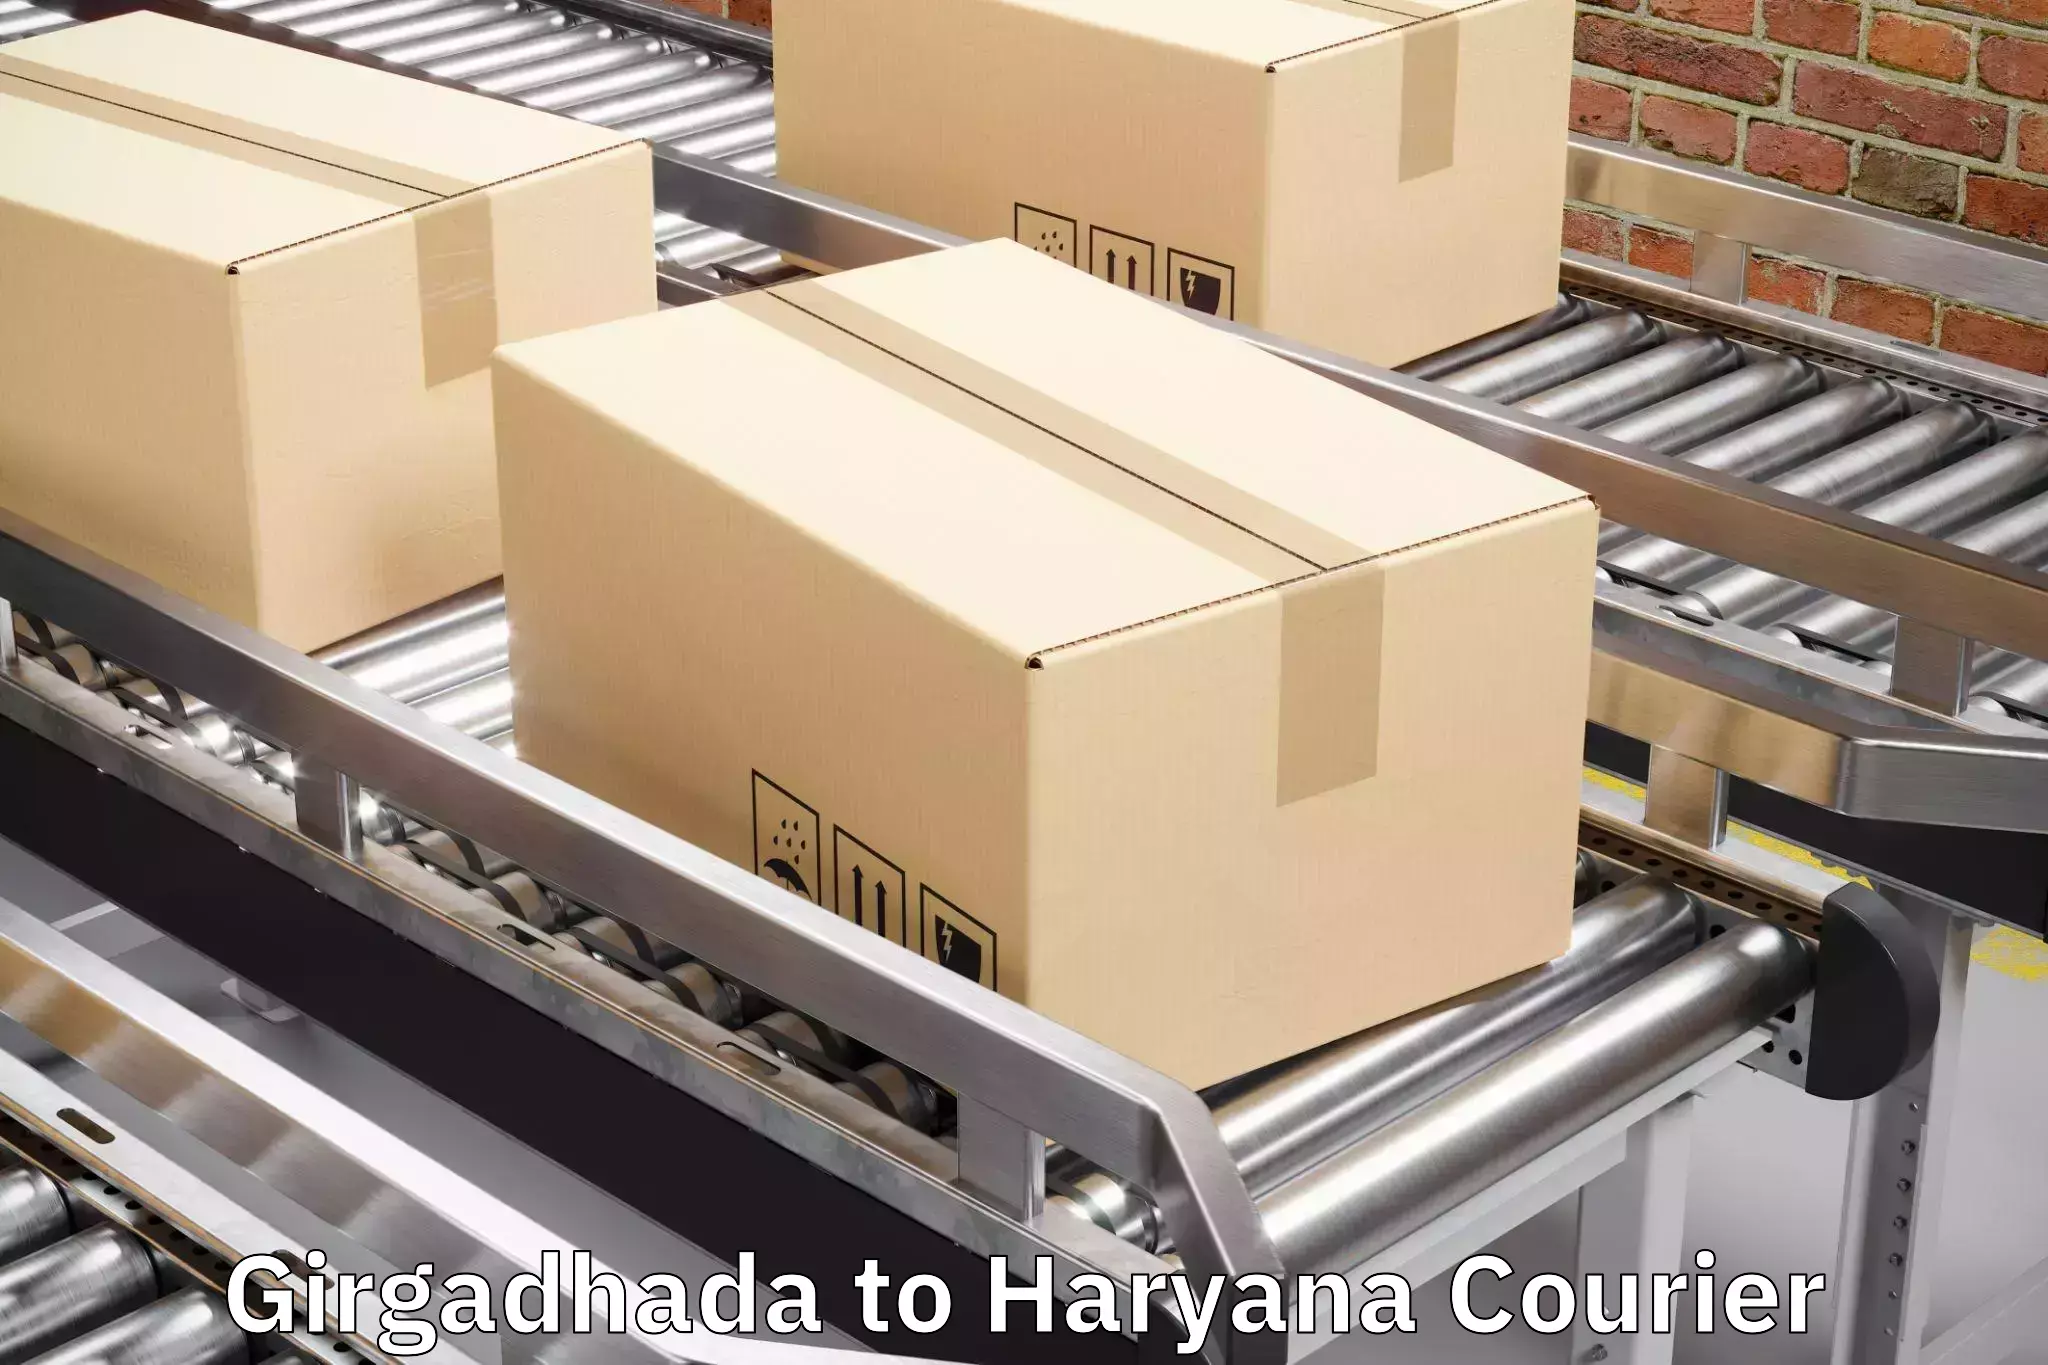 Safe luggage delivery Girgadhada to Gurugram